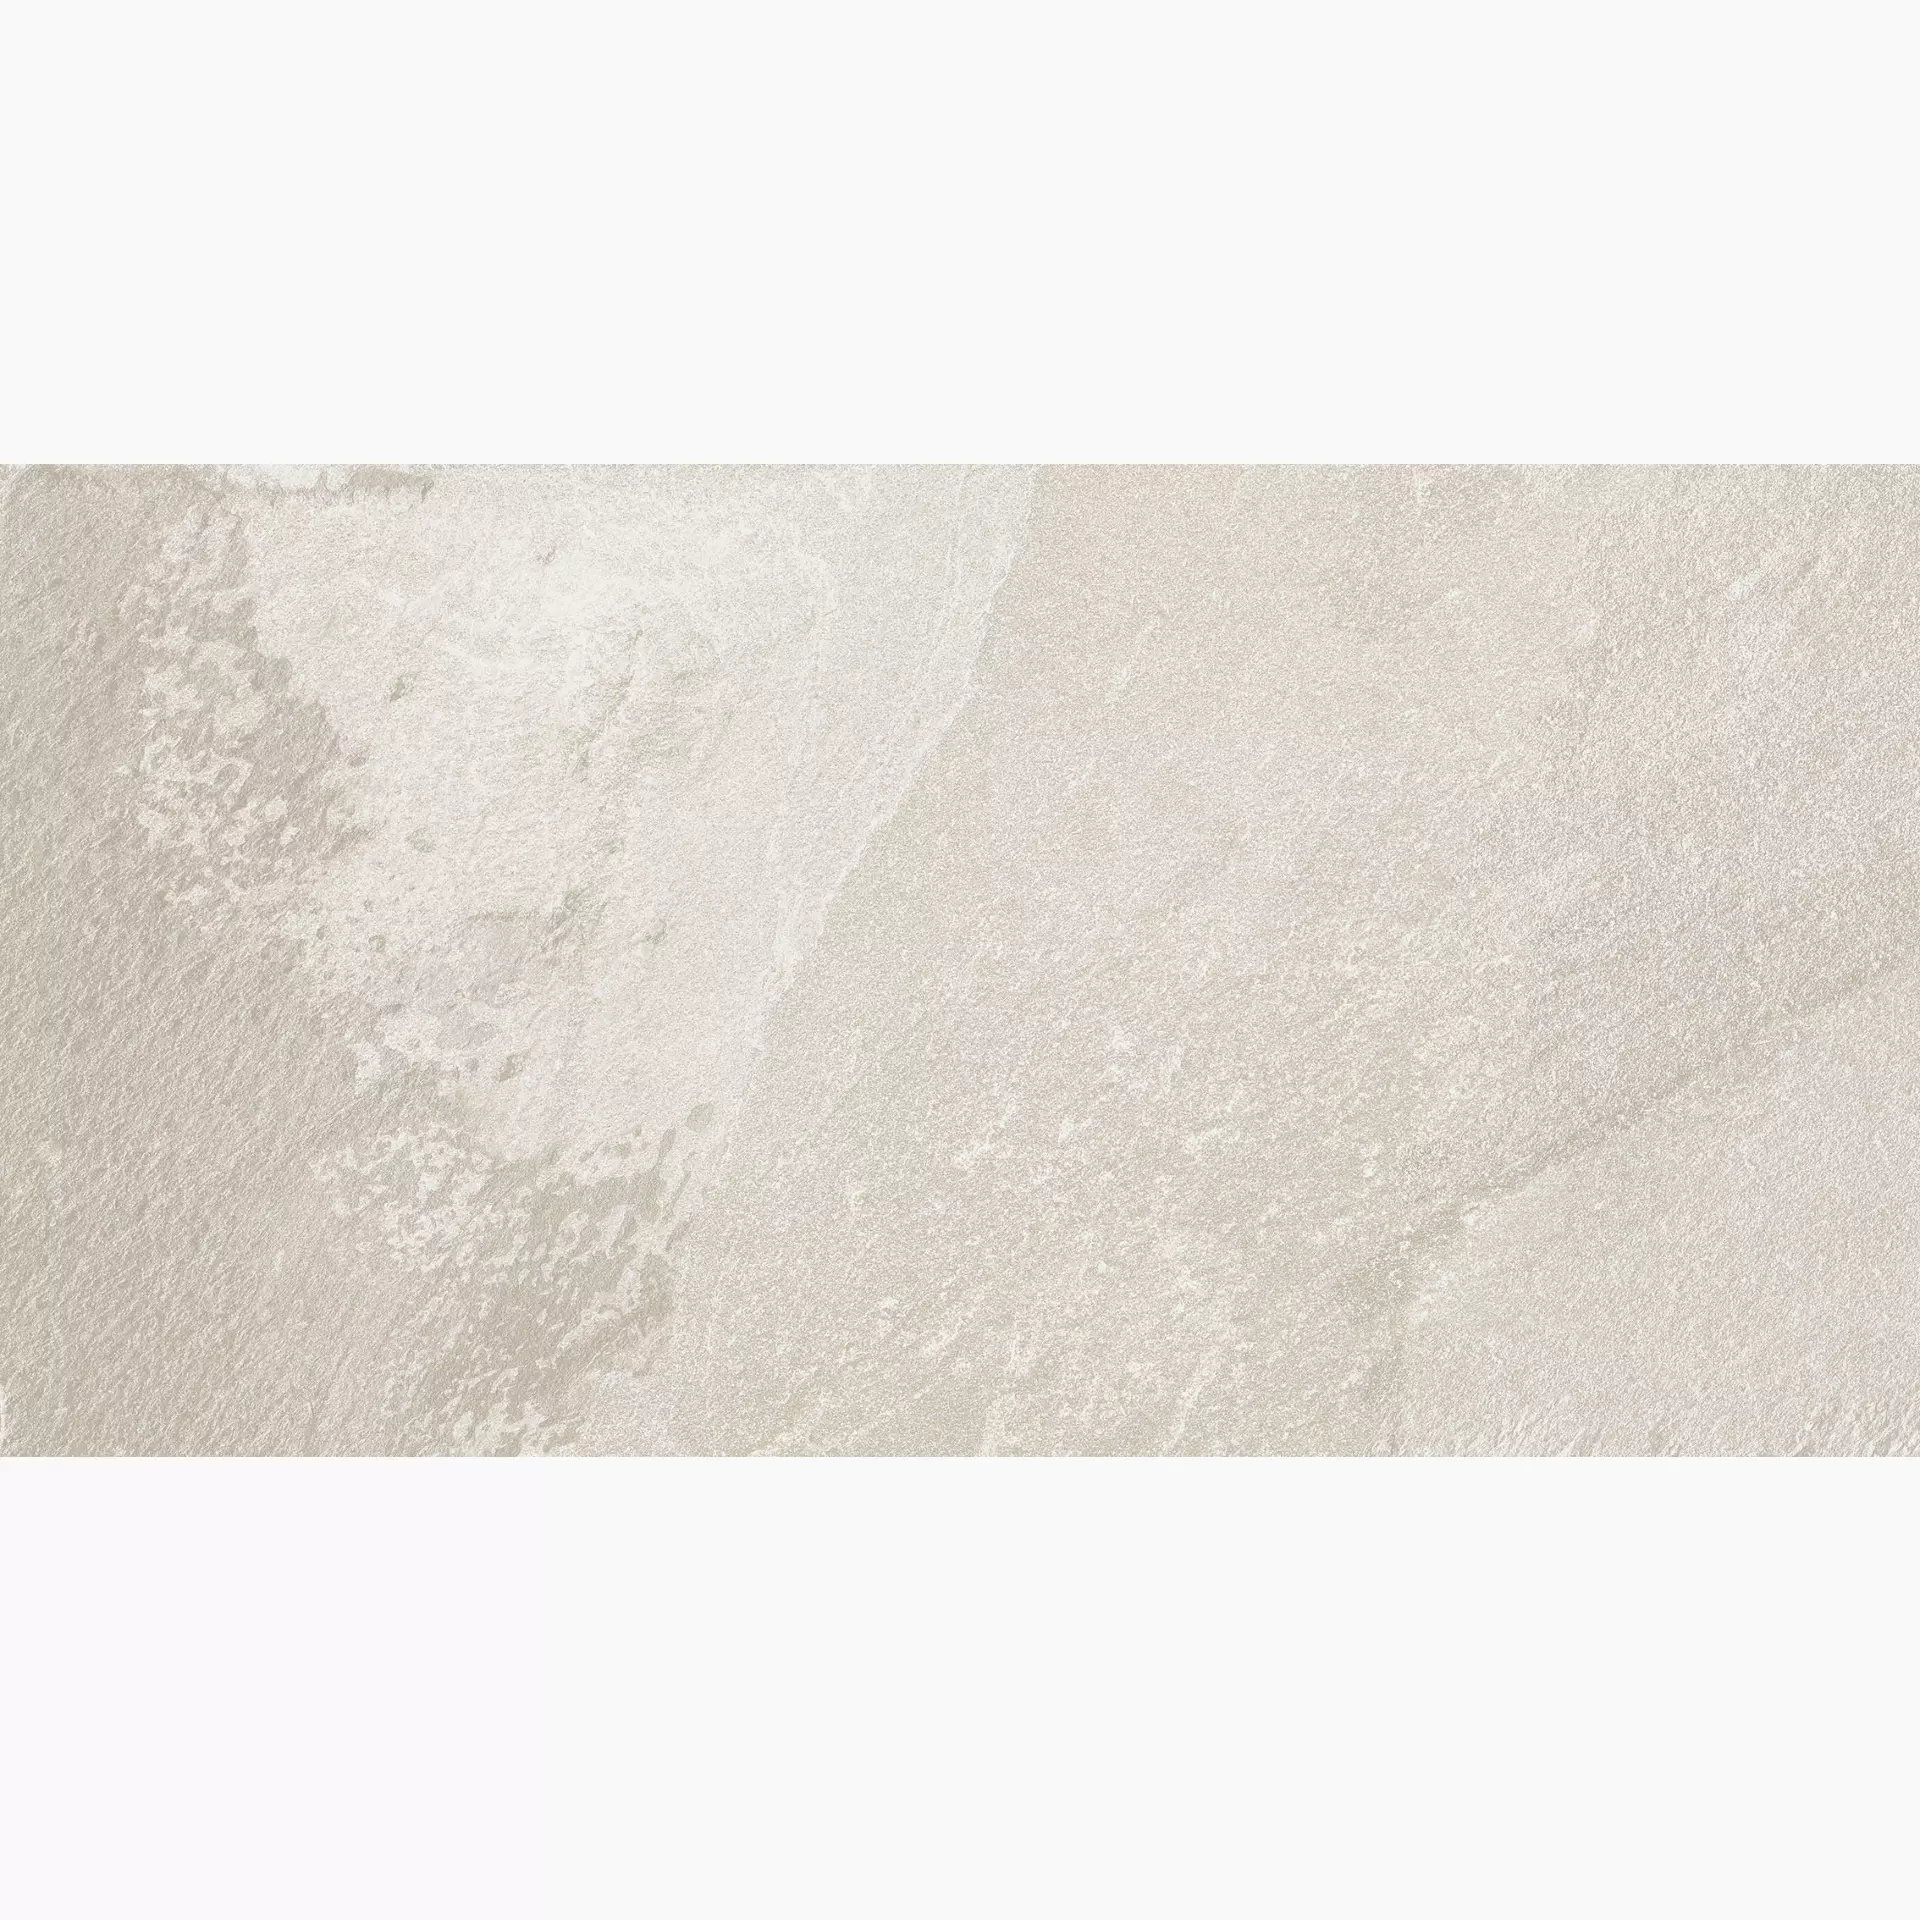 Florim Natural Stone Of Cerim White Naturale – Matt White 752014 matt natur 30x60cm rektifiziert 9mm